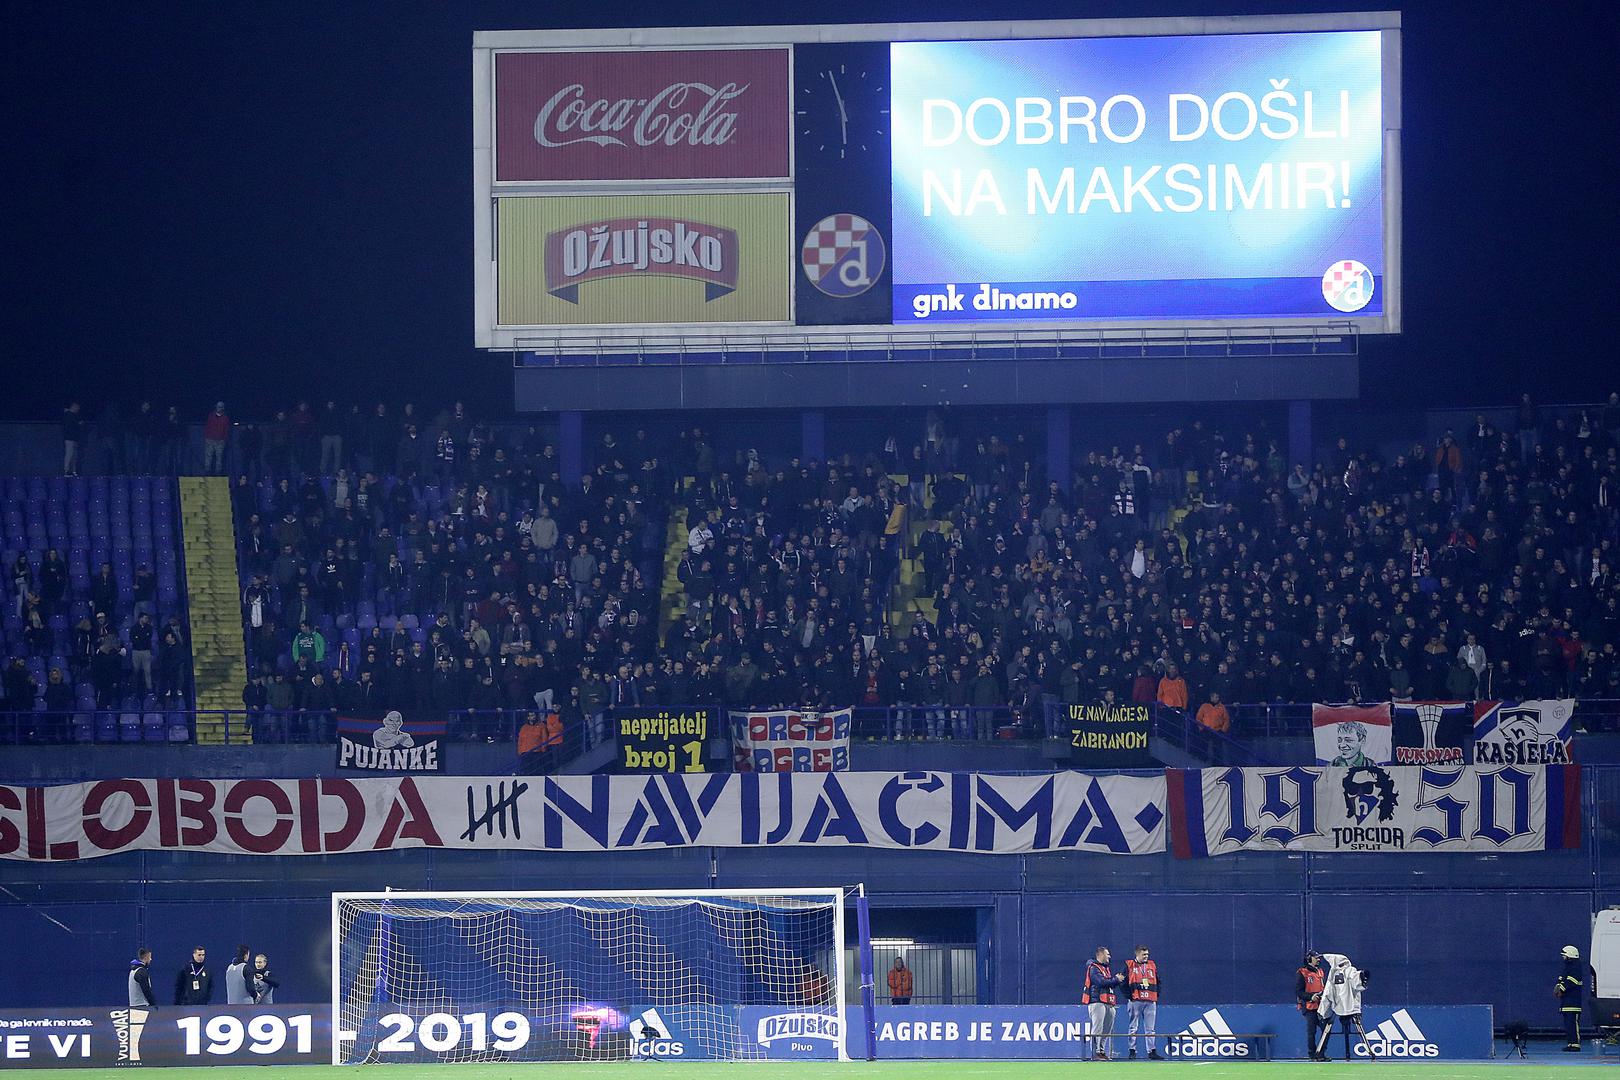 "Sloboda navijačima", poruka je Torcide s južne tribine maksimirskog stadiona.